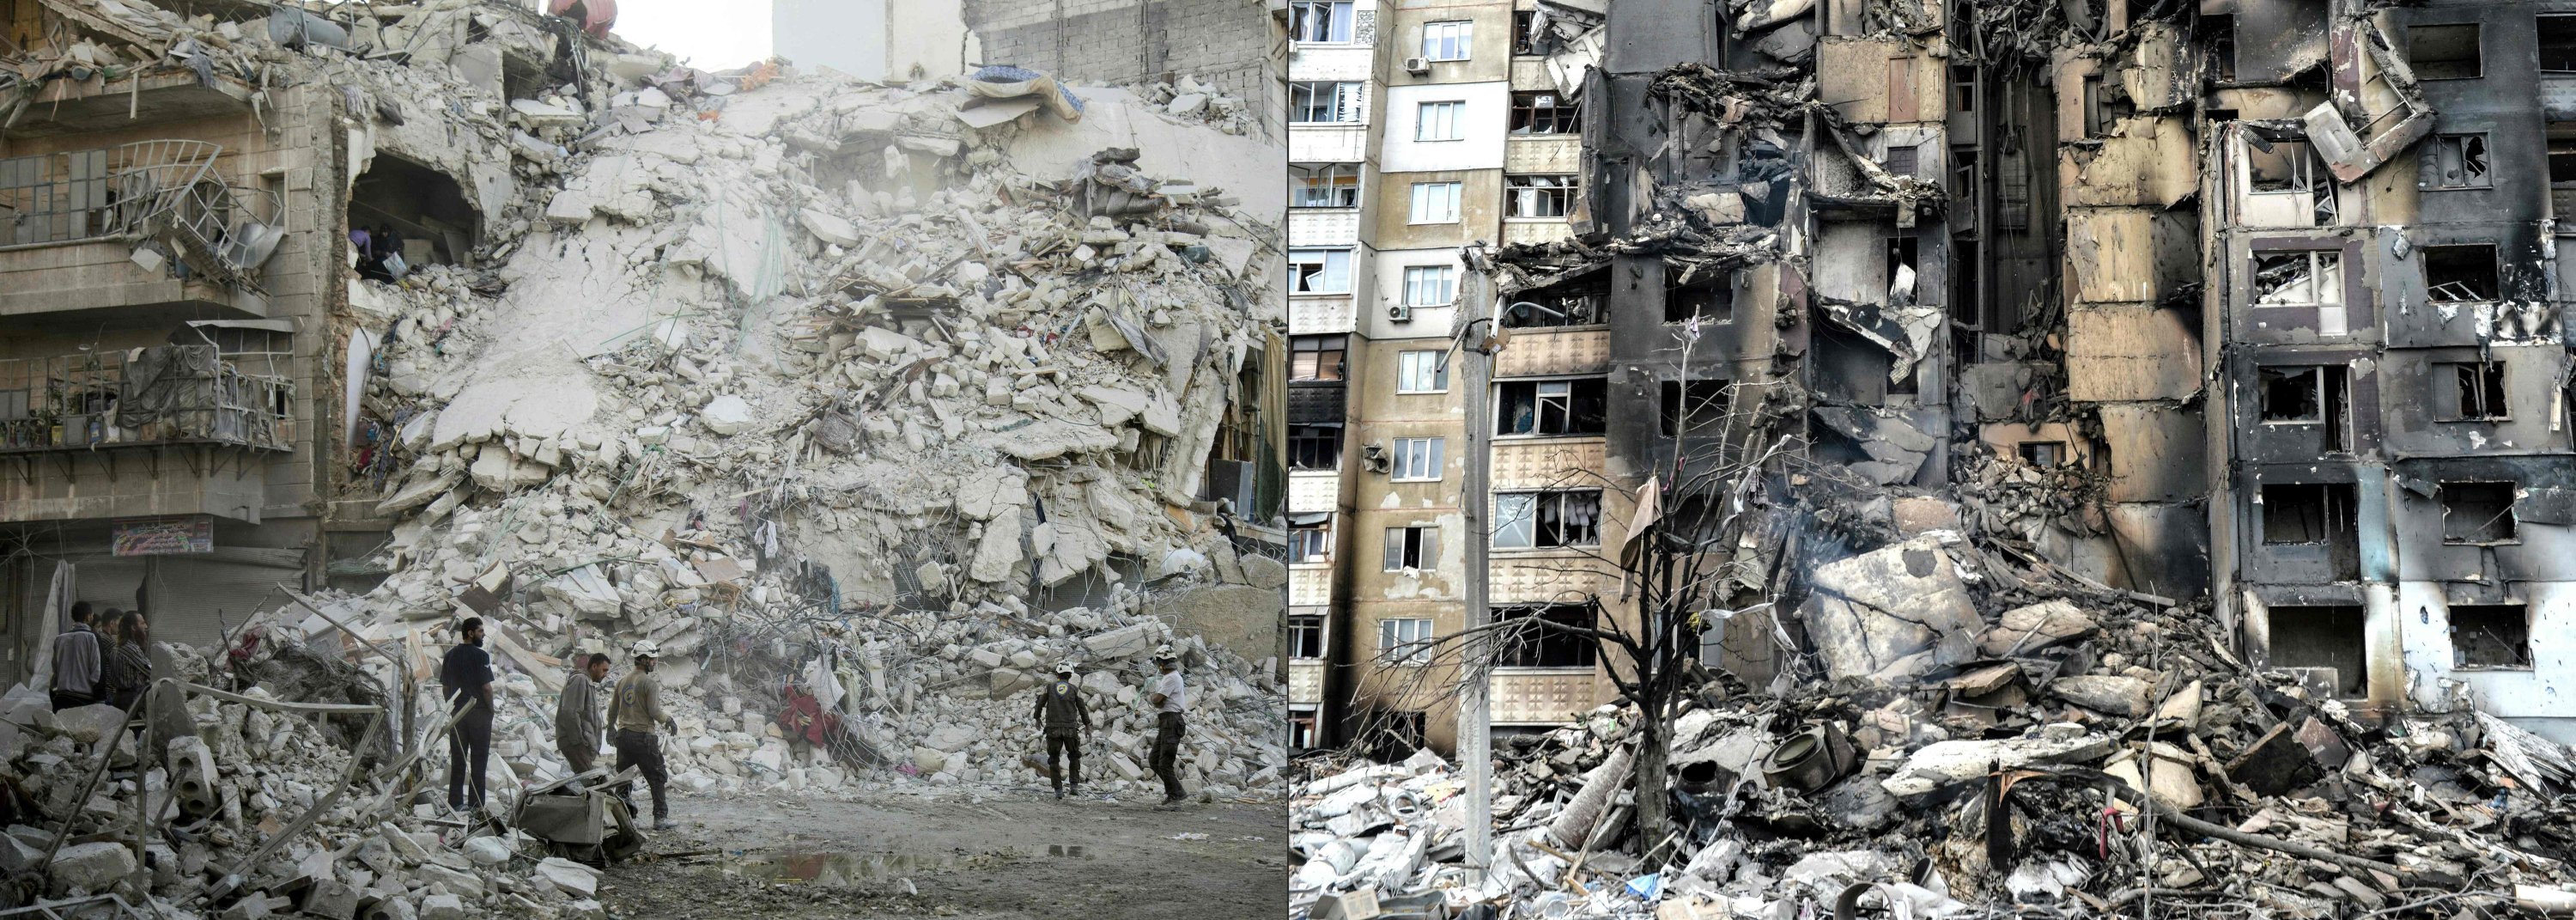 Kombinasi gambar ini menunjukkan anggota White Helmets mencari korban di tengah puing-puing bangunan yang hancur setelah serangan udara yang dilaporkan di lingkungan Qatarji di kota utara Aleppo, pada 17 Oktober 2016, dan gambar yang menunjukkan sebuah gedung apartemen hancur. setelah penembakan sehari sebelumnya di kota terbesar kedua di Ukraina Kharkiv pada 8 Maret 2022. (AFP Photo)